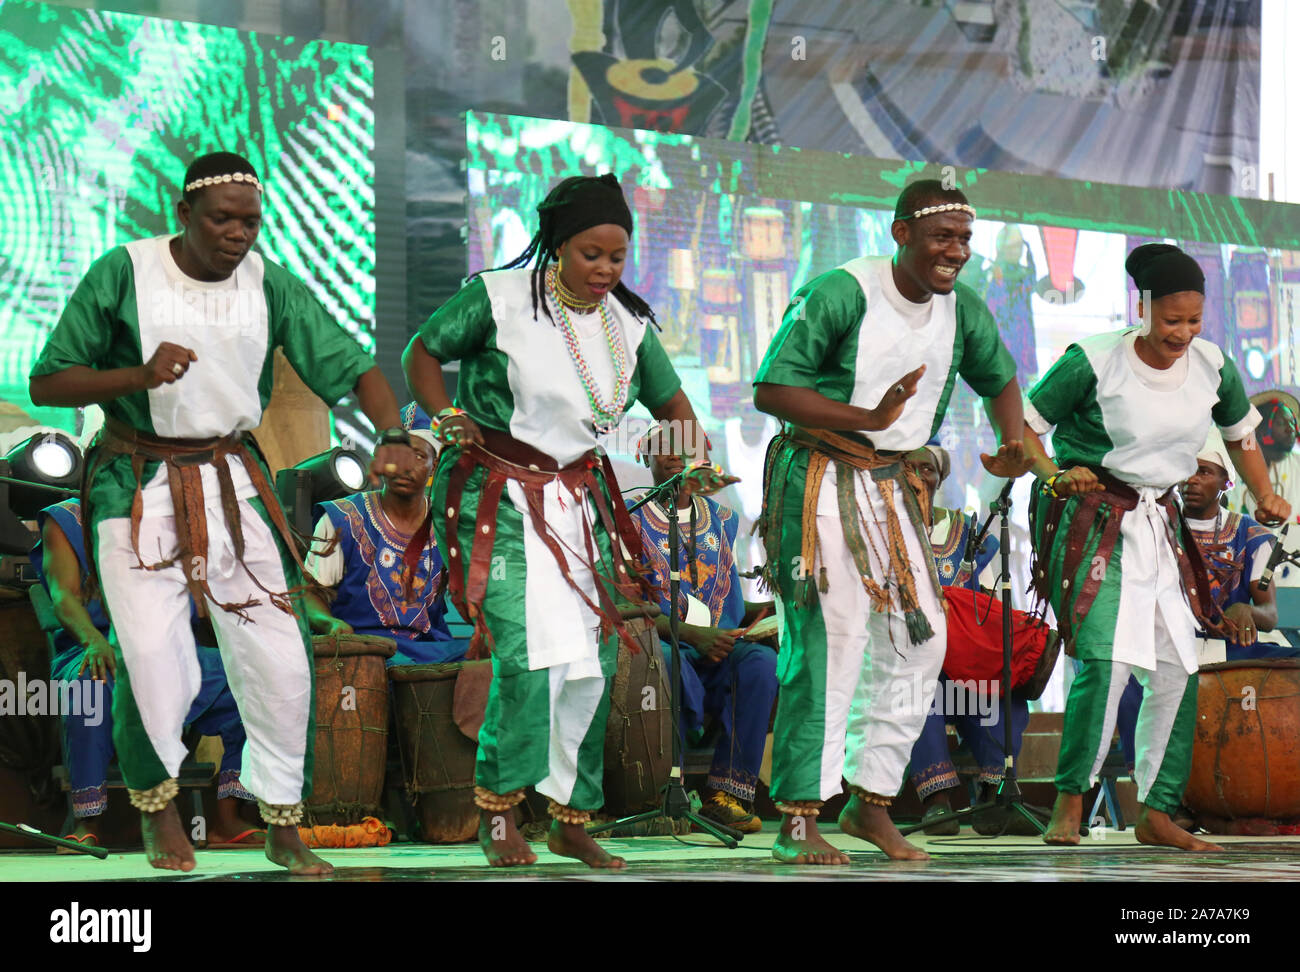 Les tribus Hausa/Fulani du Nigeria se présentant lors du Festival national du tambour, à Abeokuta, dans l'État d'Ogun, au Nigeria. Banque D'Images